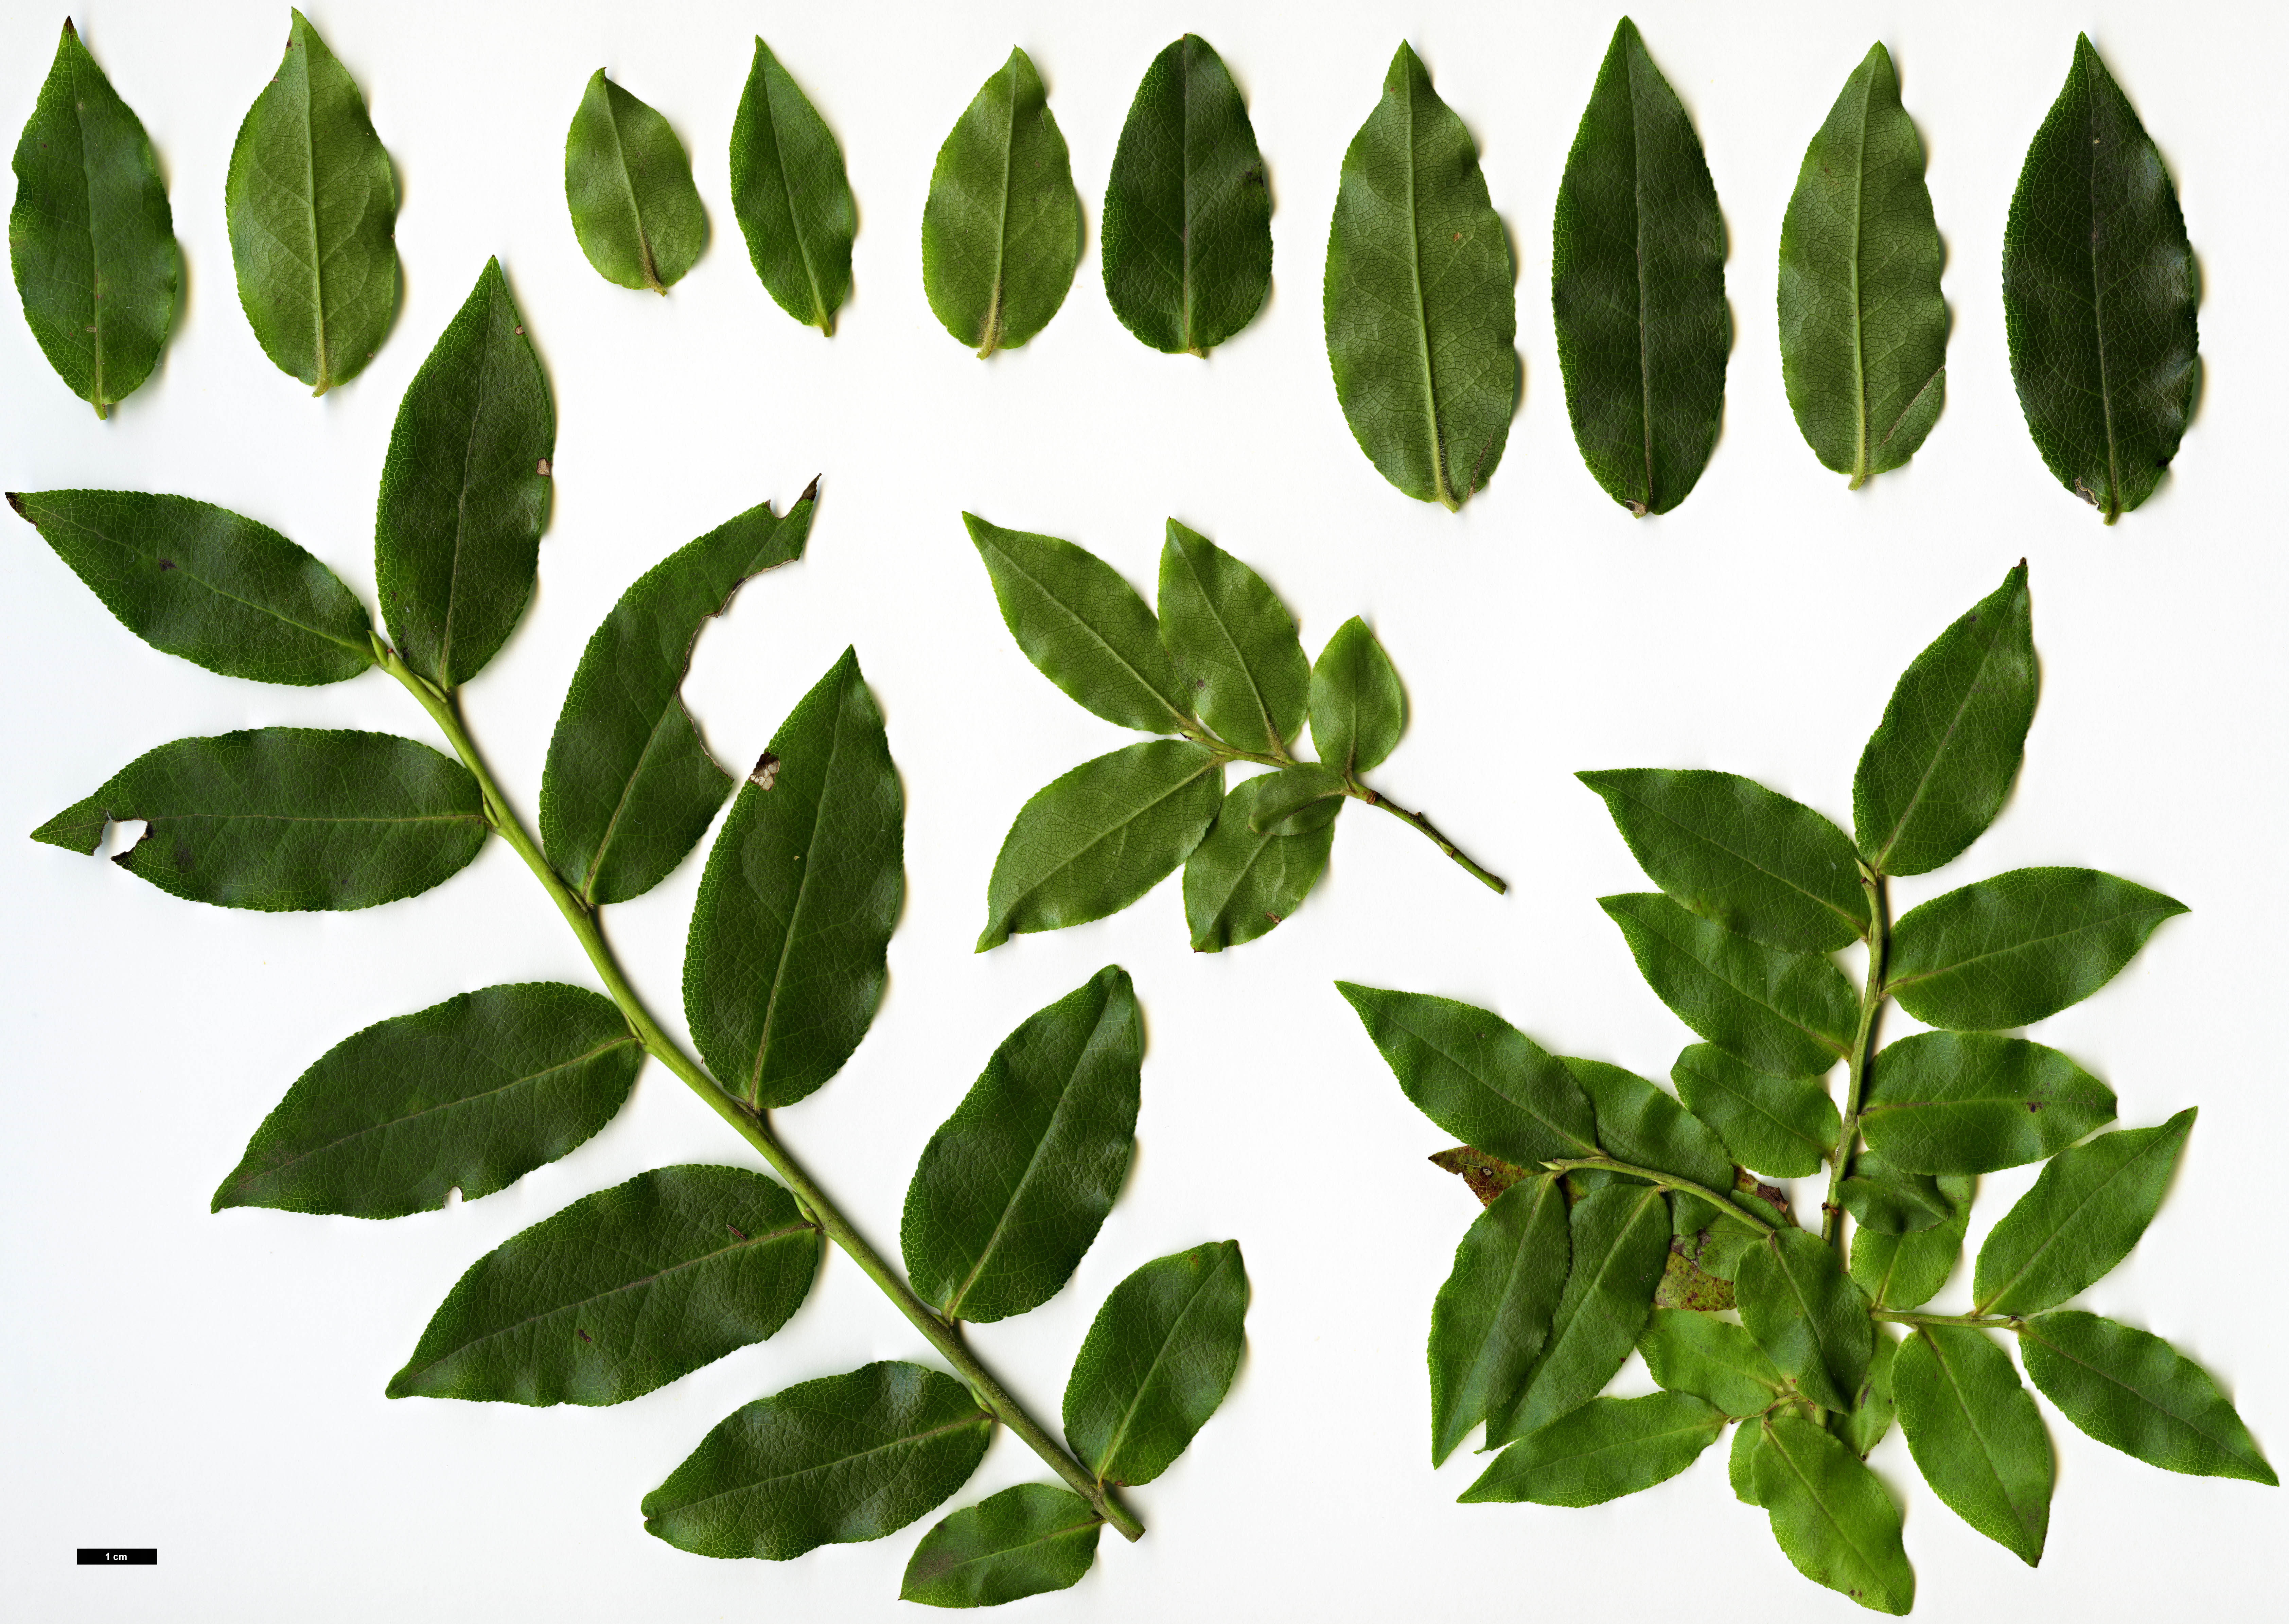 High resolution image: Family: Ericaceae - Genus: Vaccinium - Taxon: padifolium